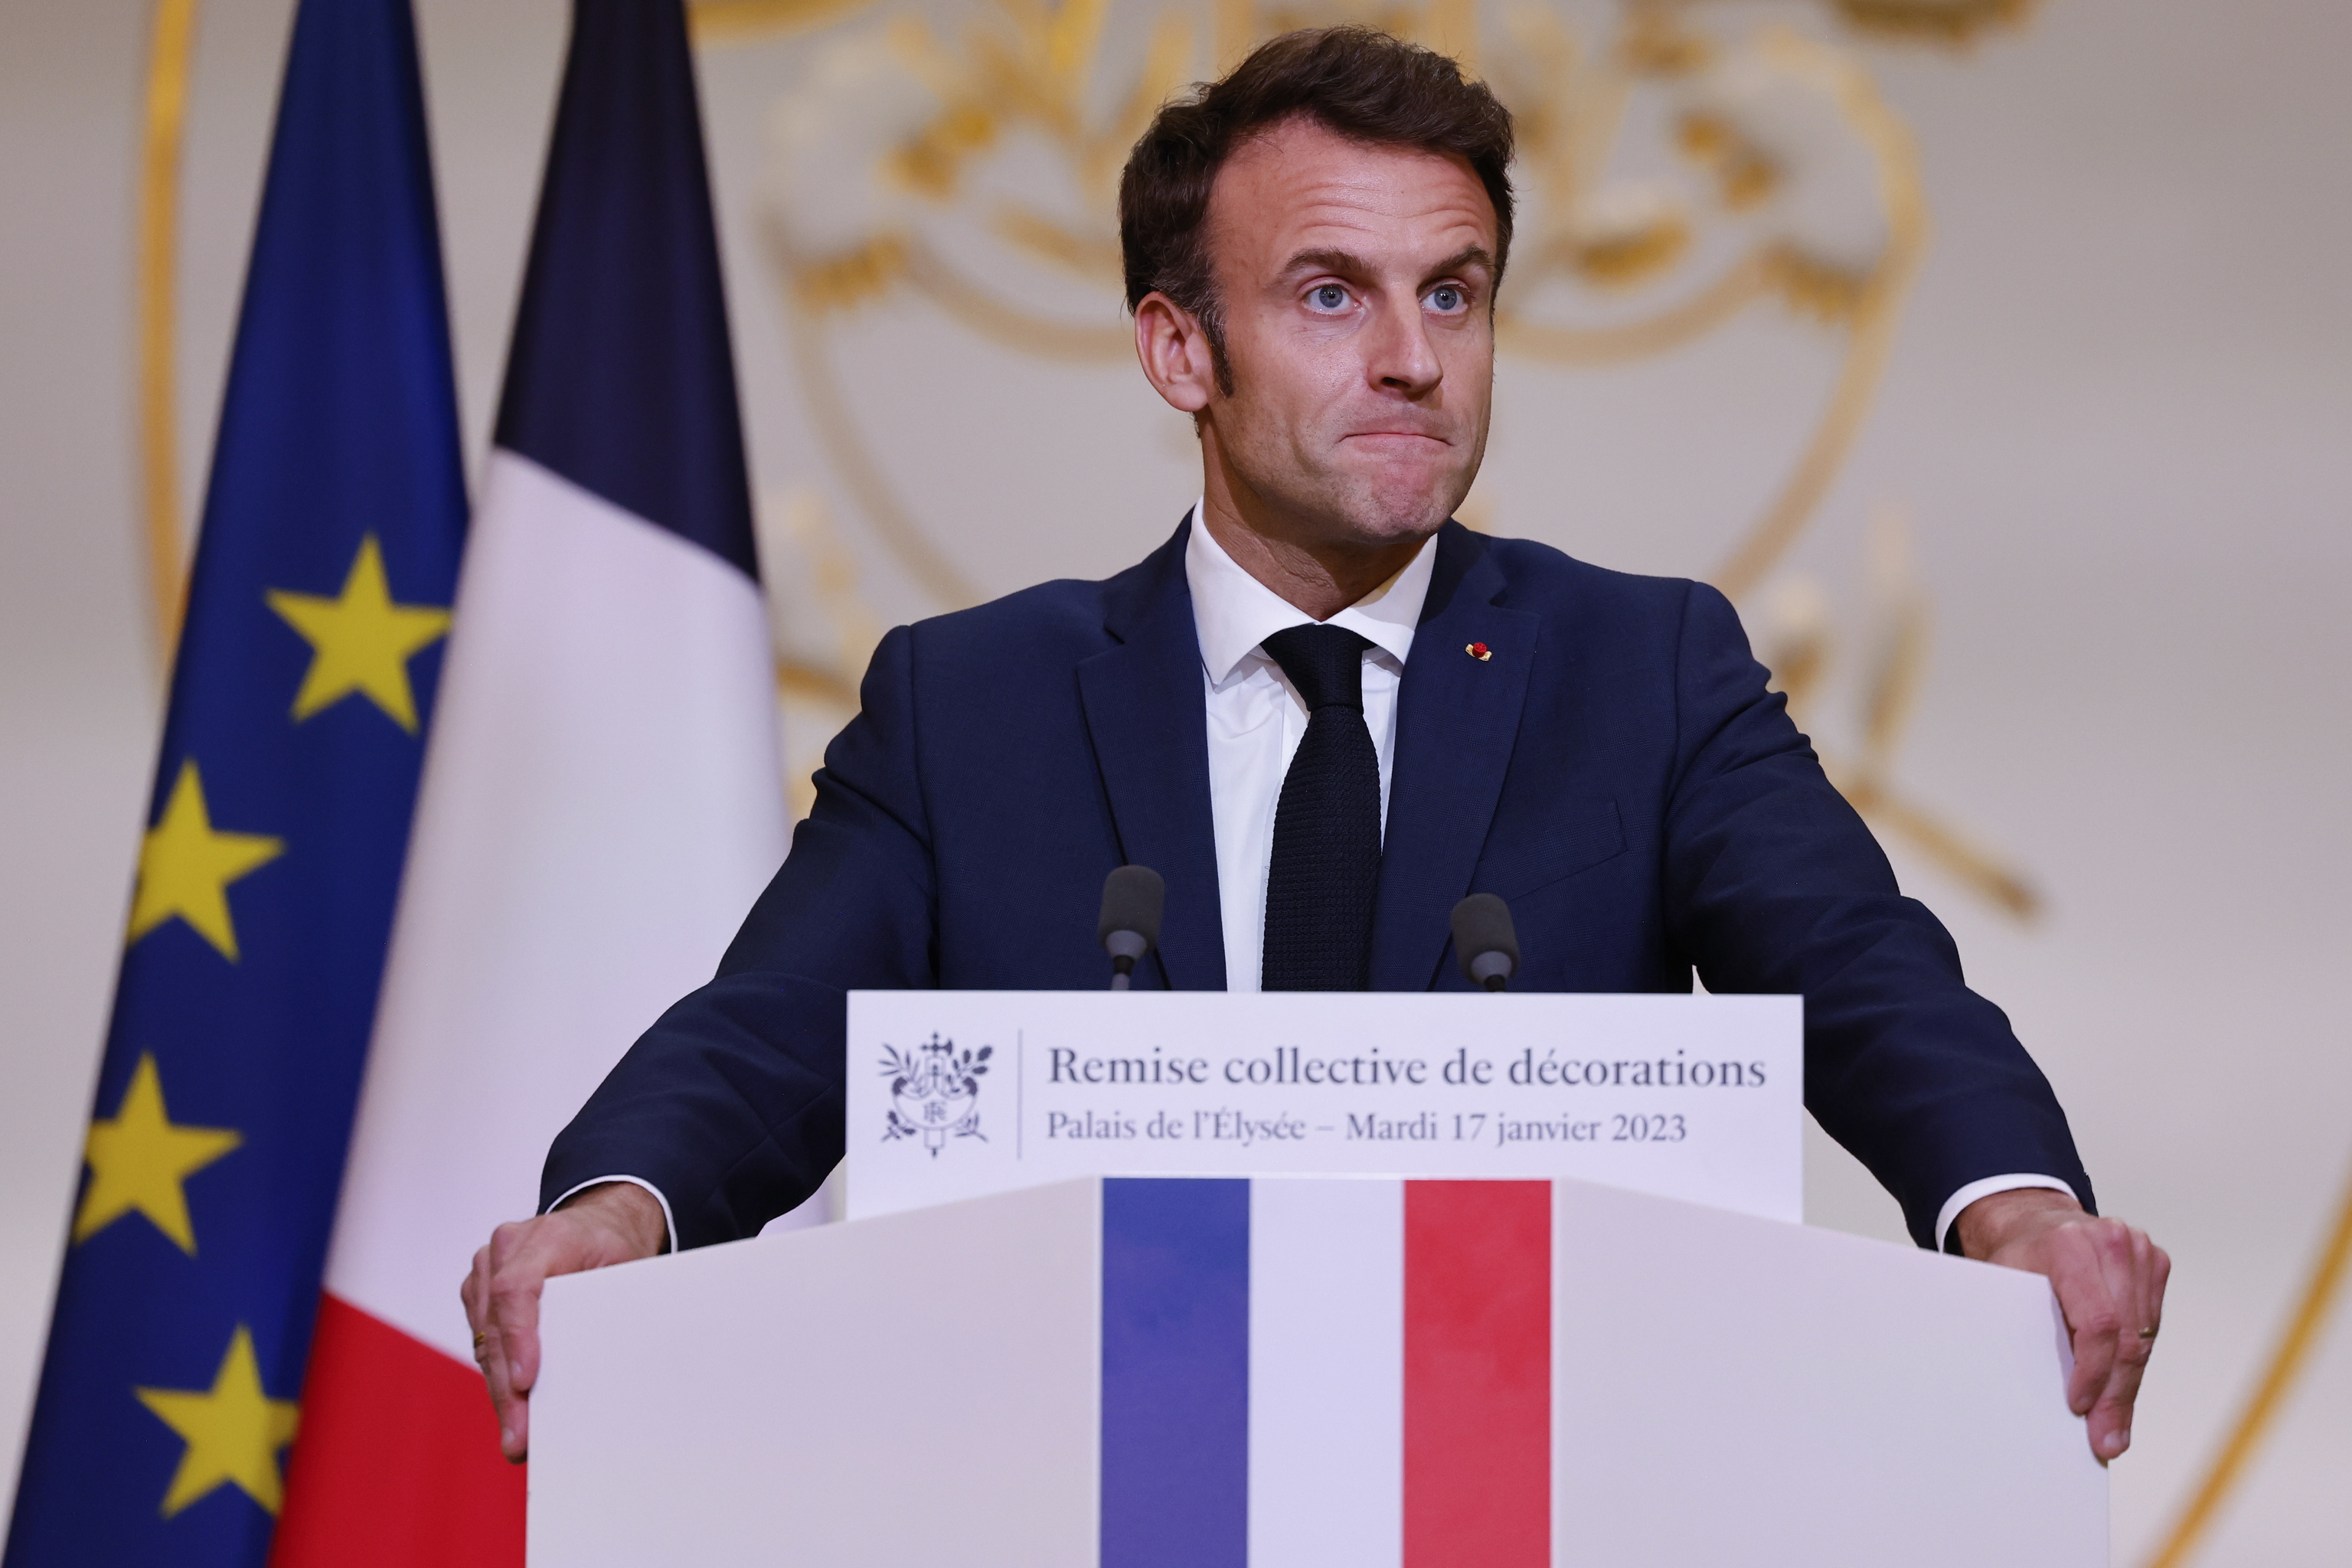 La primera jornada de huelga contra la reforma de las pensiones de Macron amenaza con paralizar Francia